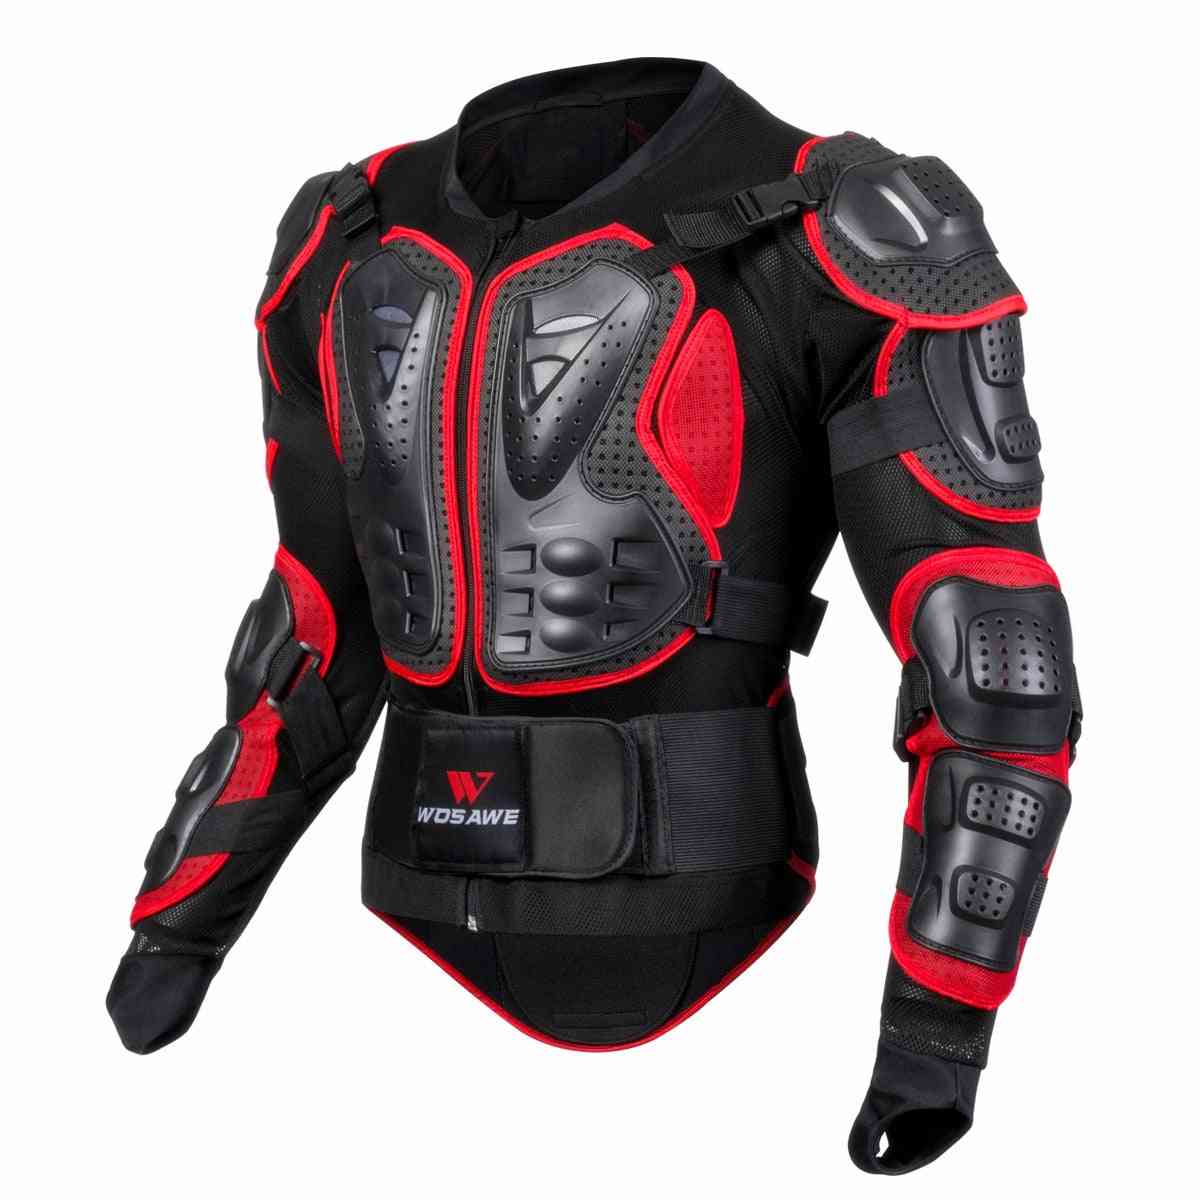 Muška jakna s potpunim oklopom, zaštitna oprema za motocross utrke, zaštita za lakat na prsima